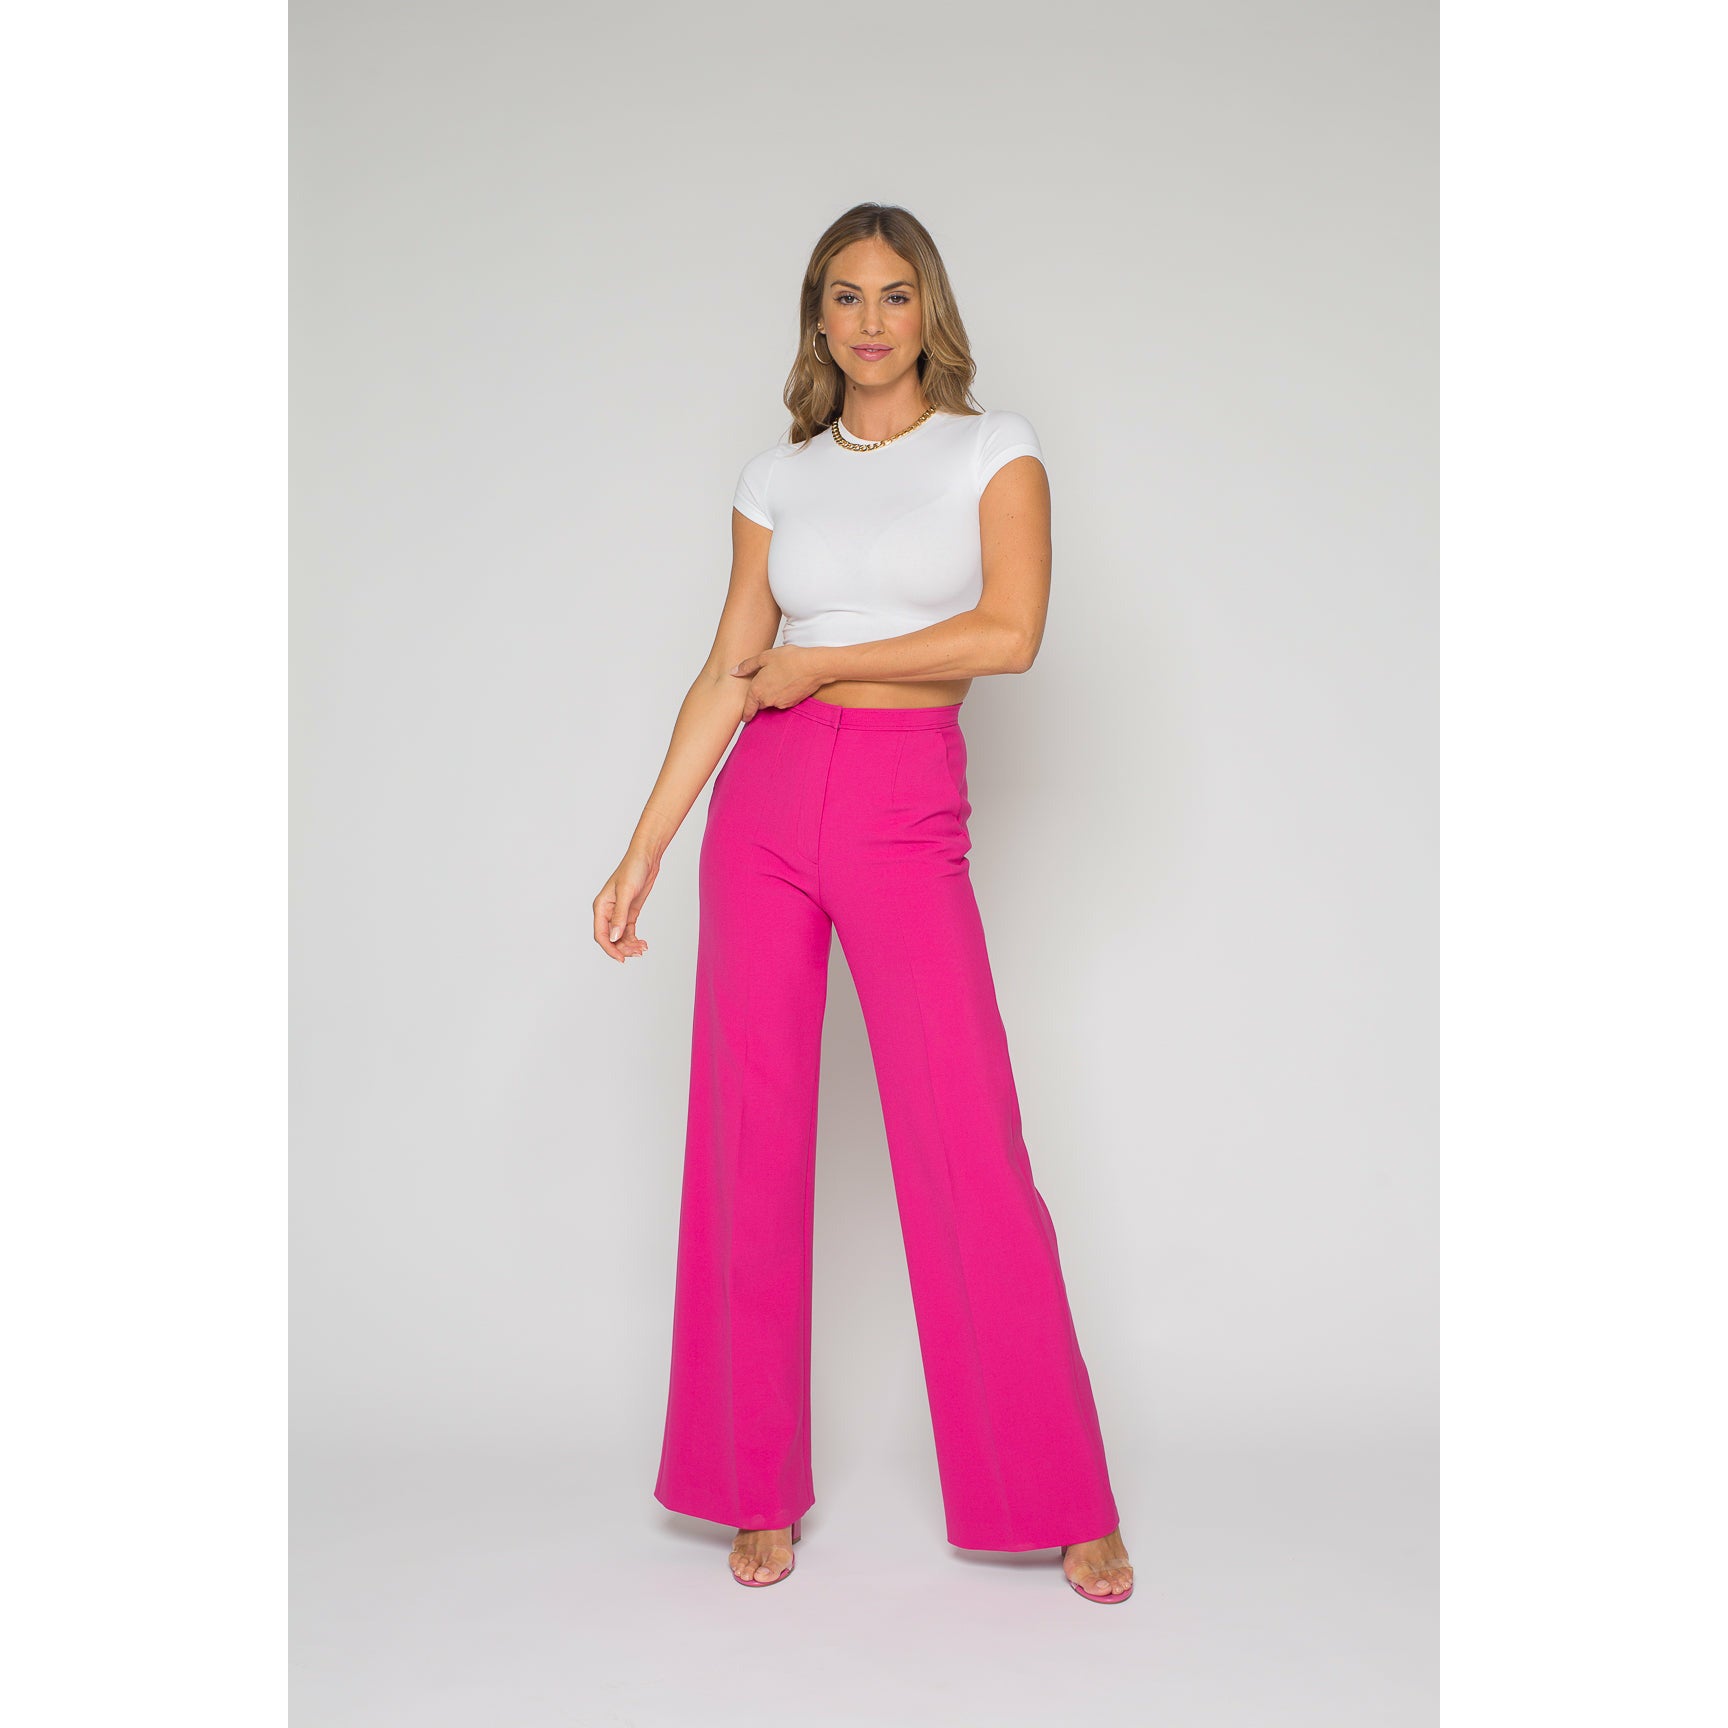 Shop Pink Women's Pants - Sofia Light Coral - Buy Online